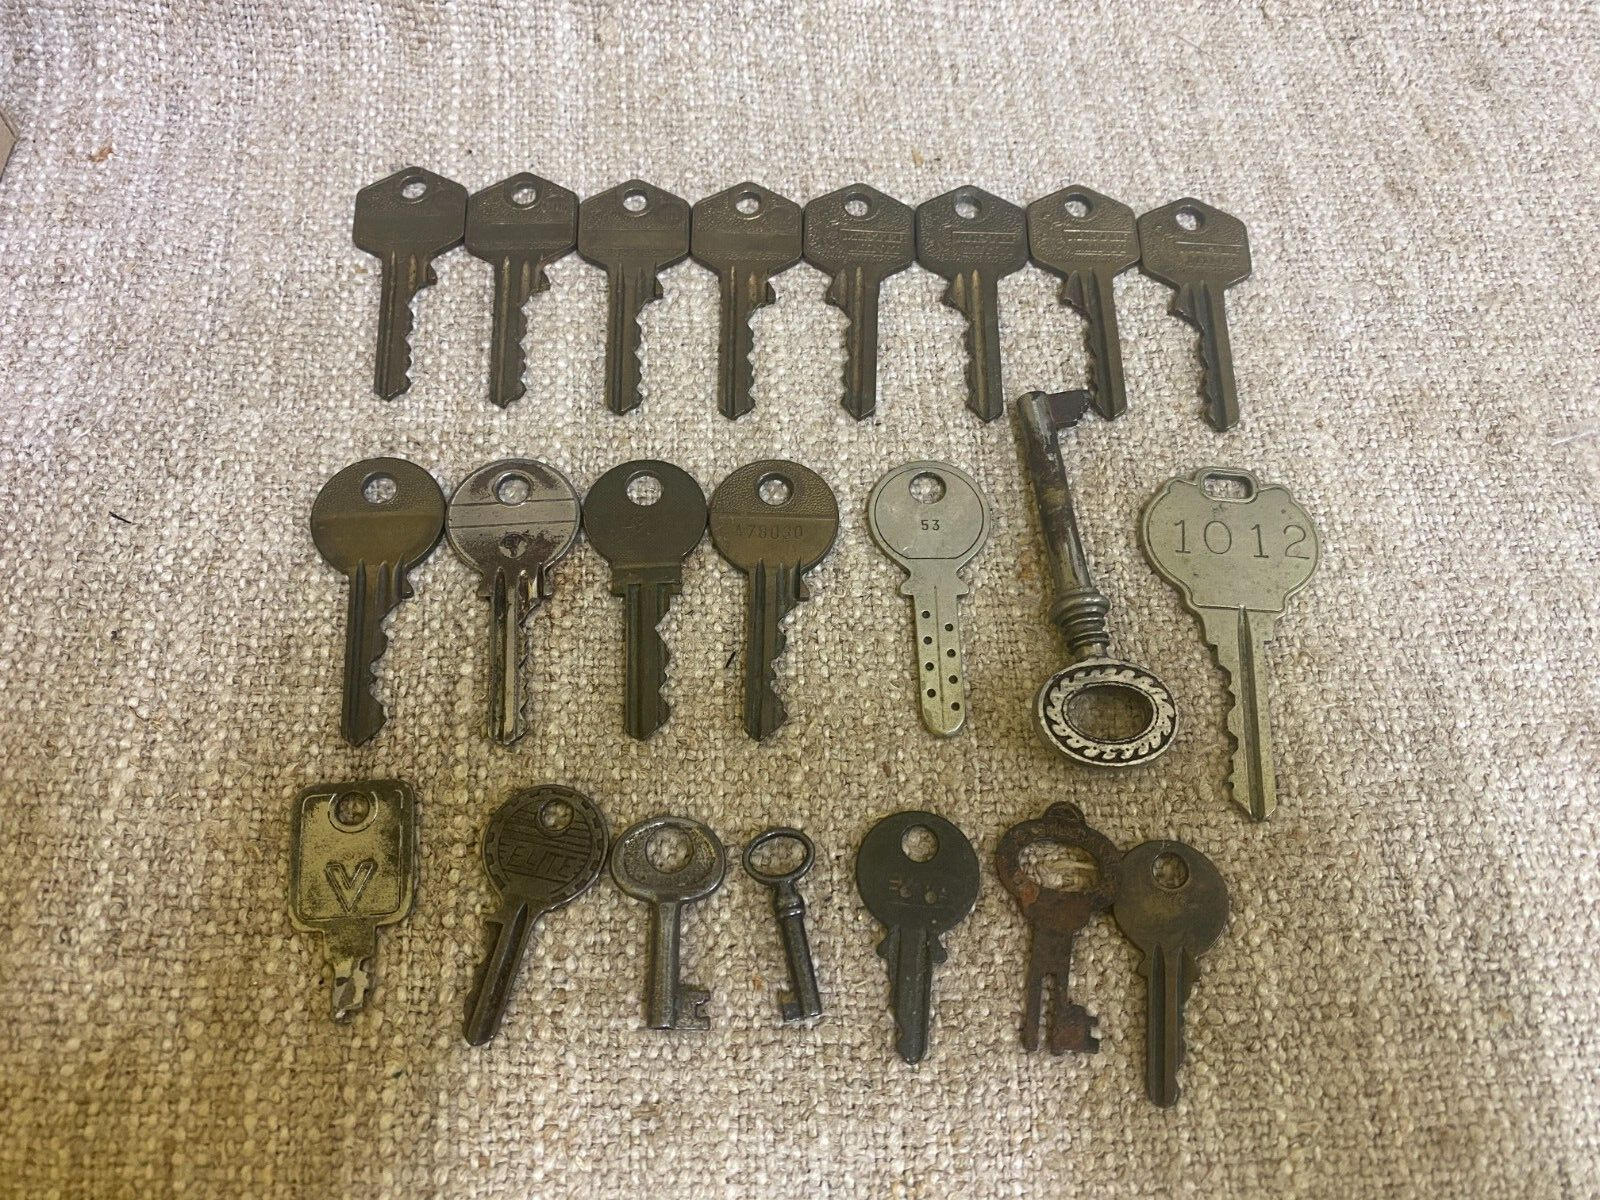 Antique vintage old set lot collection metallic keys